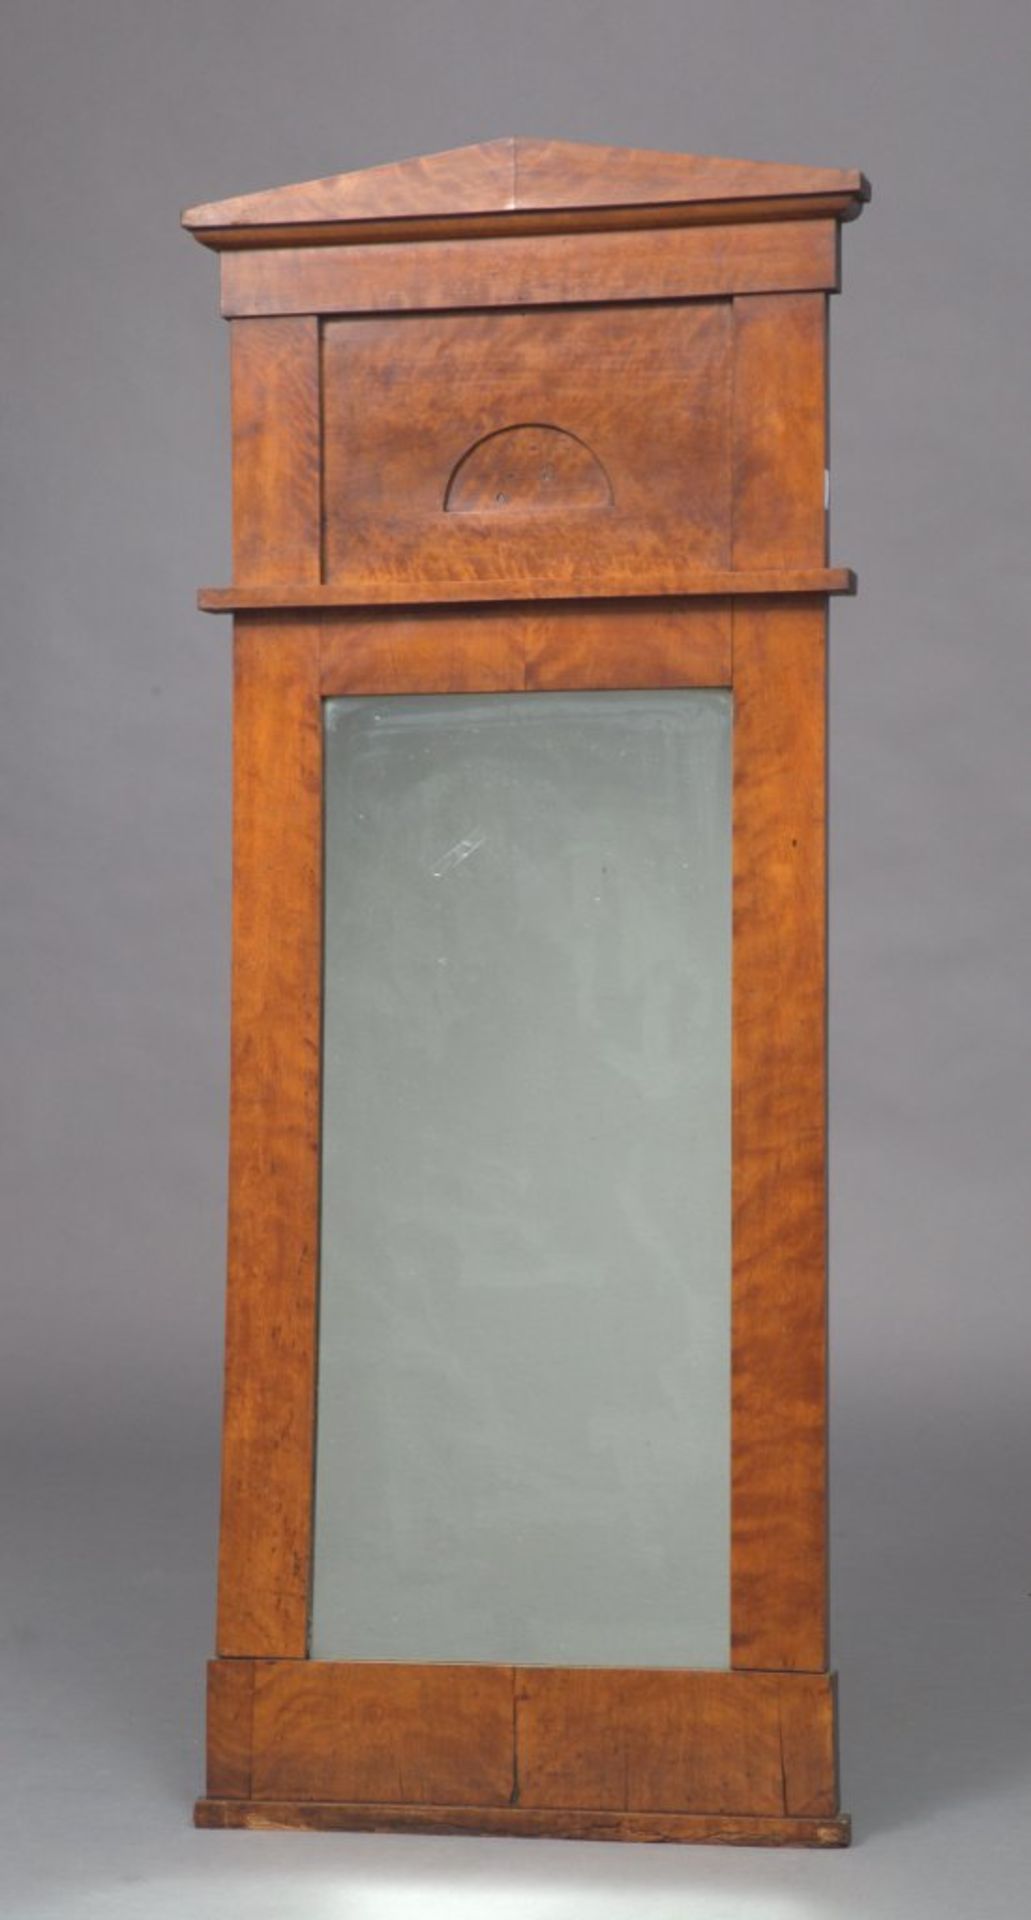 Biedermeier-Pfeilerspiegel. Giebelaufsatz. Birke. Norddeutsch, um 1820. 157 x 66 cm